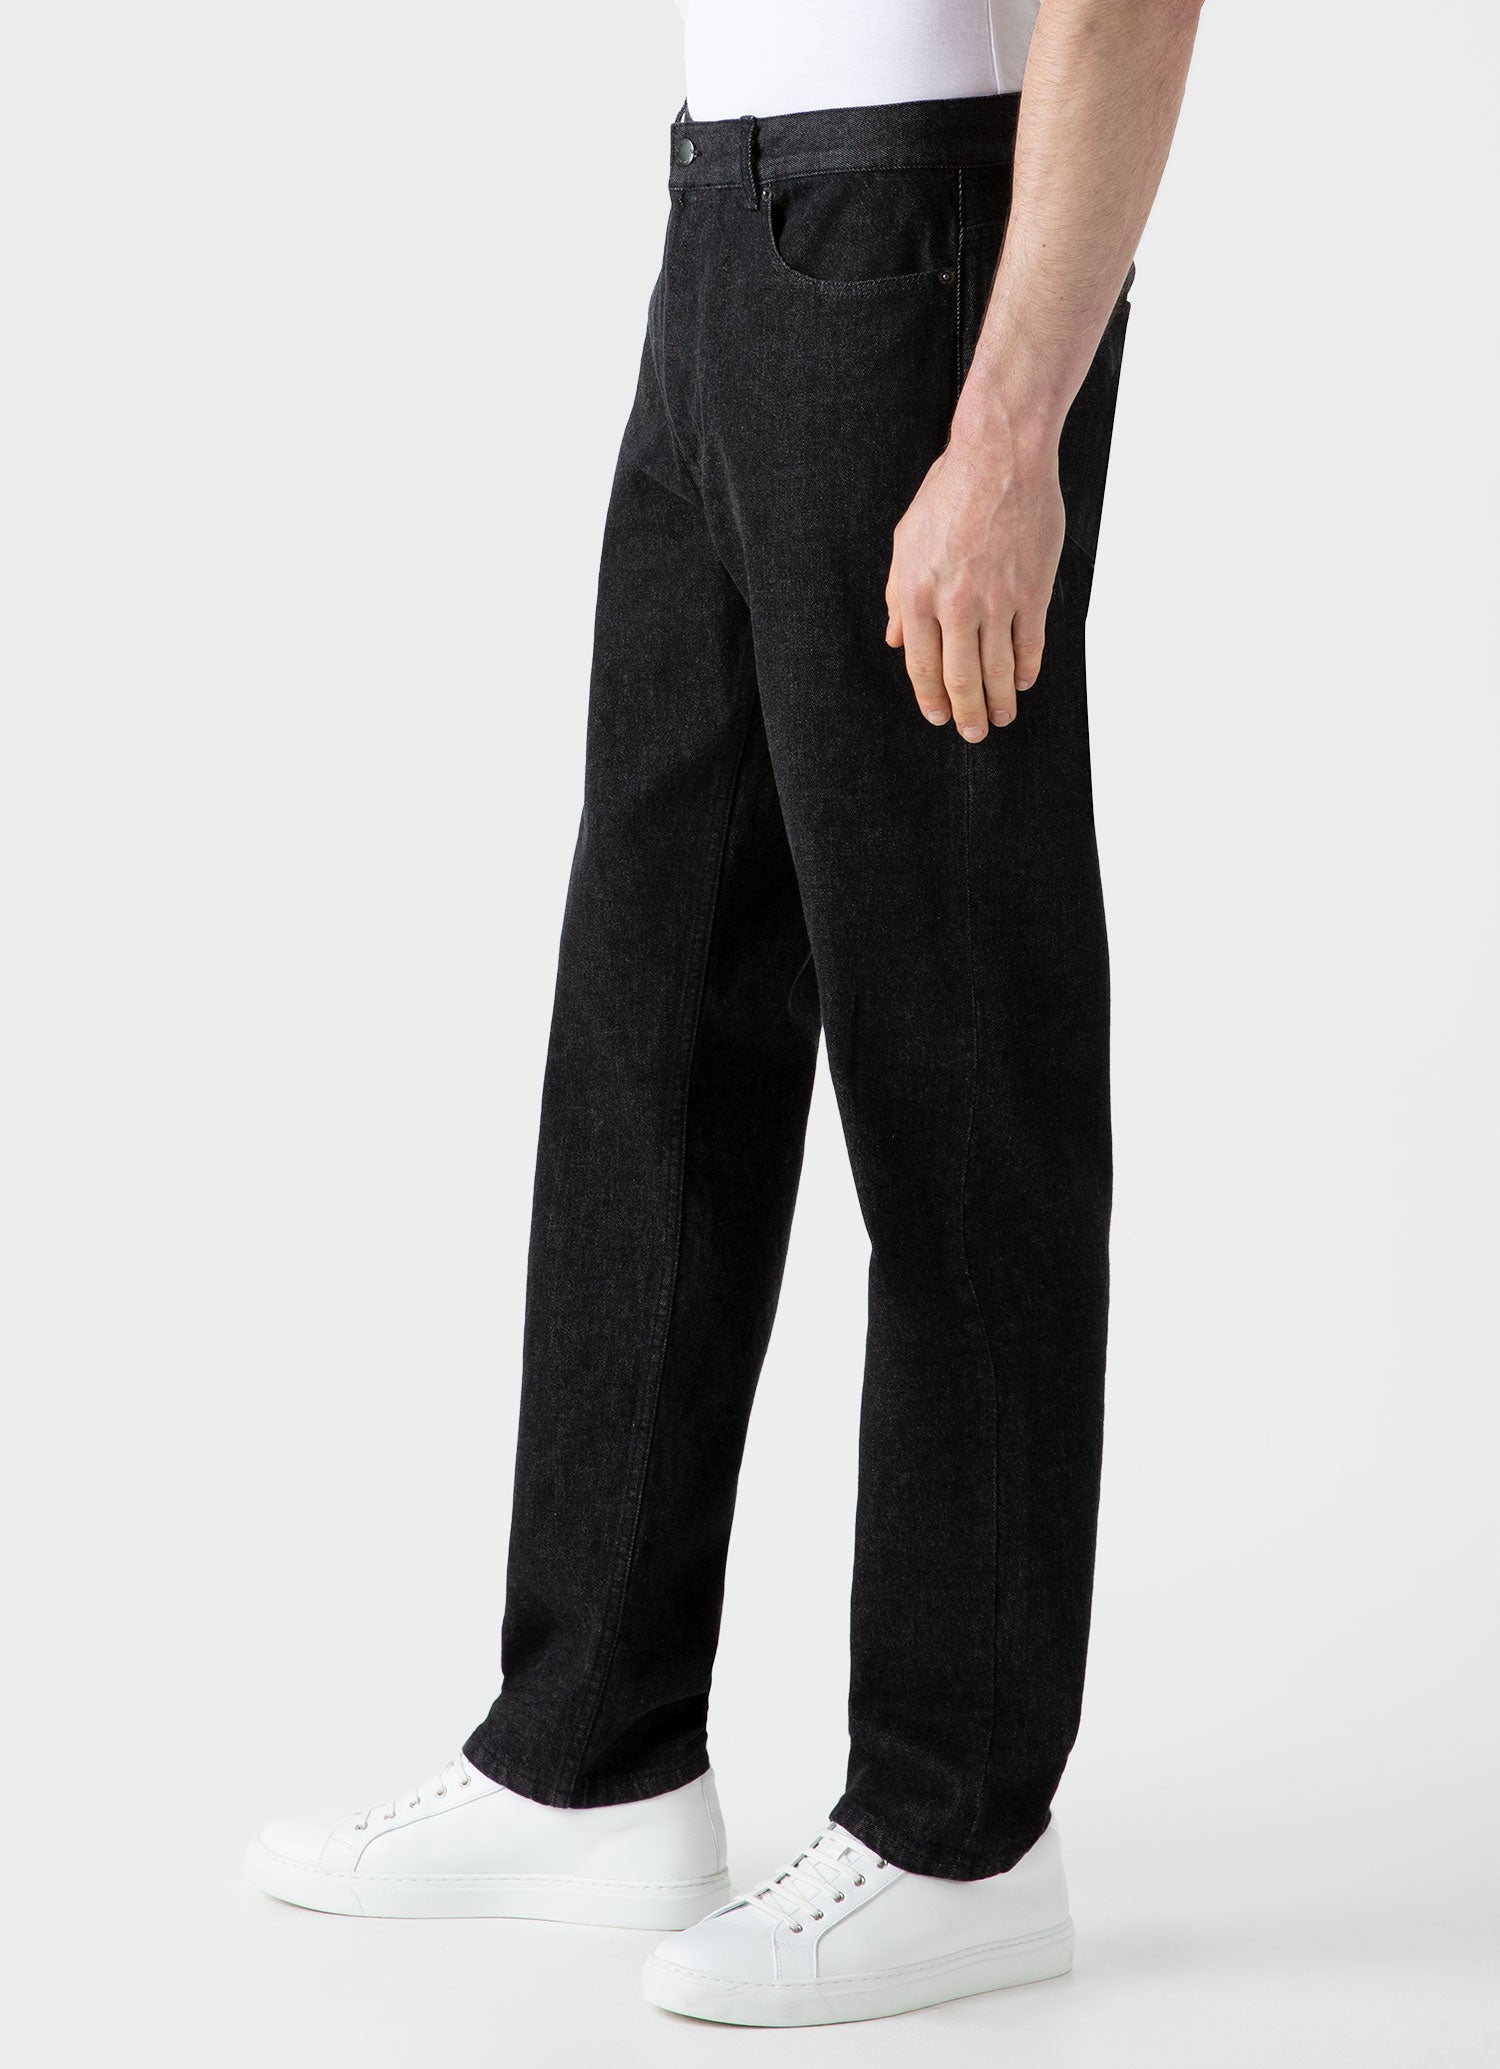 Men's Regular Fit Jeans in Black Wash Denim